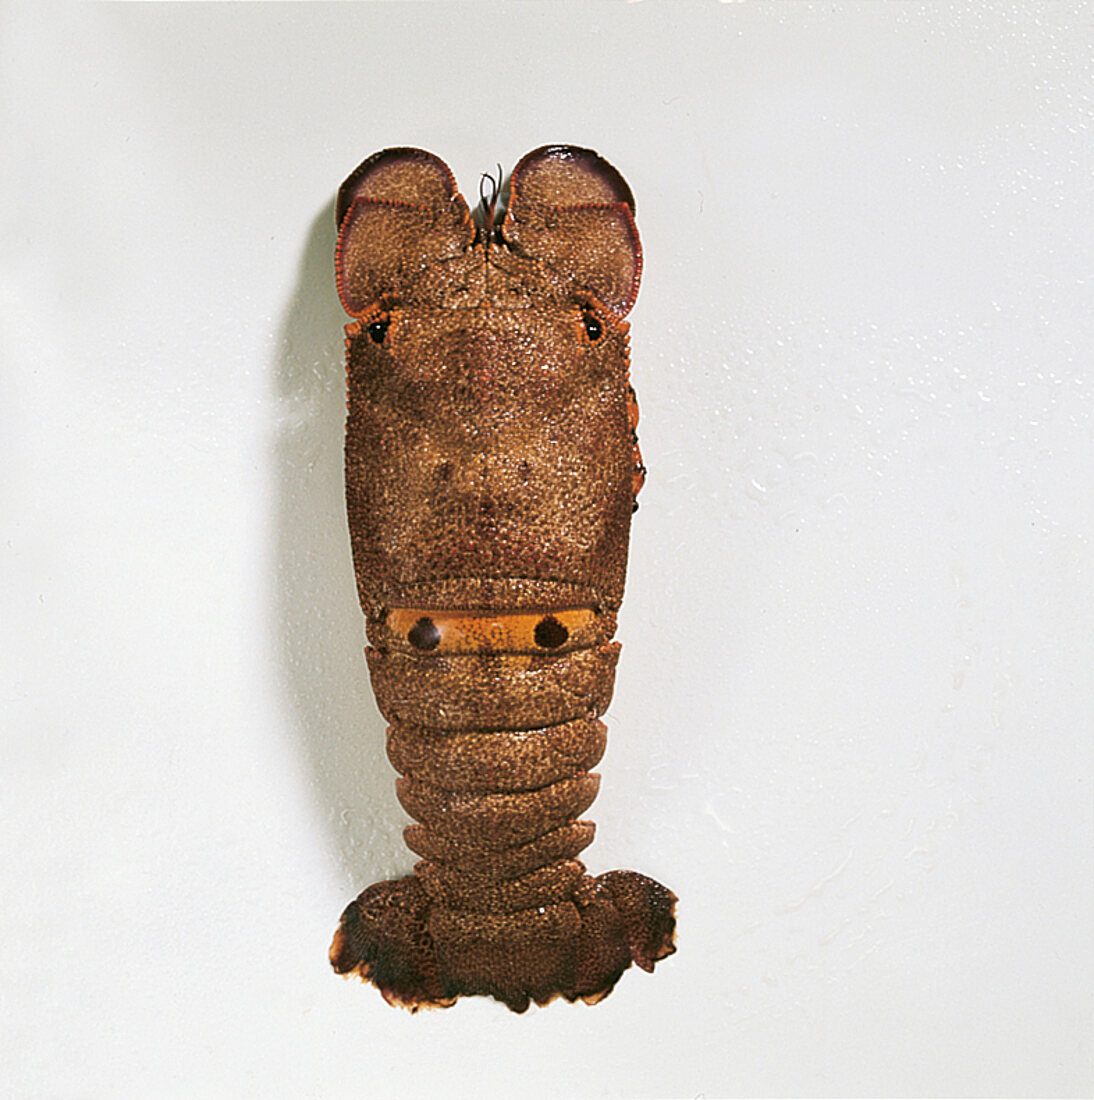 Shrimps, Brasilianischer Bären -krebs mit 2 dunklen Flecken